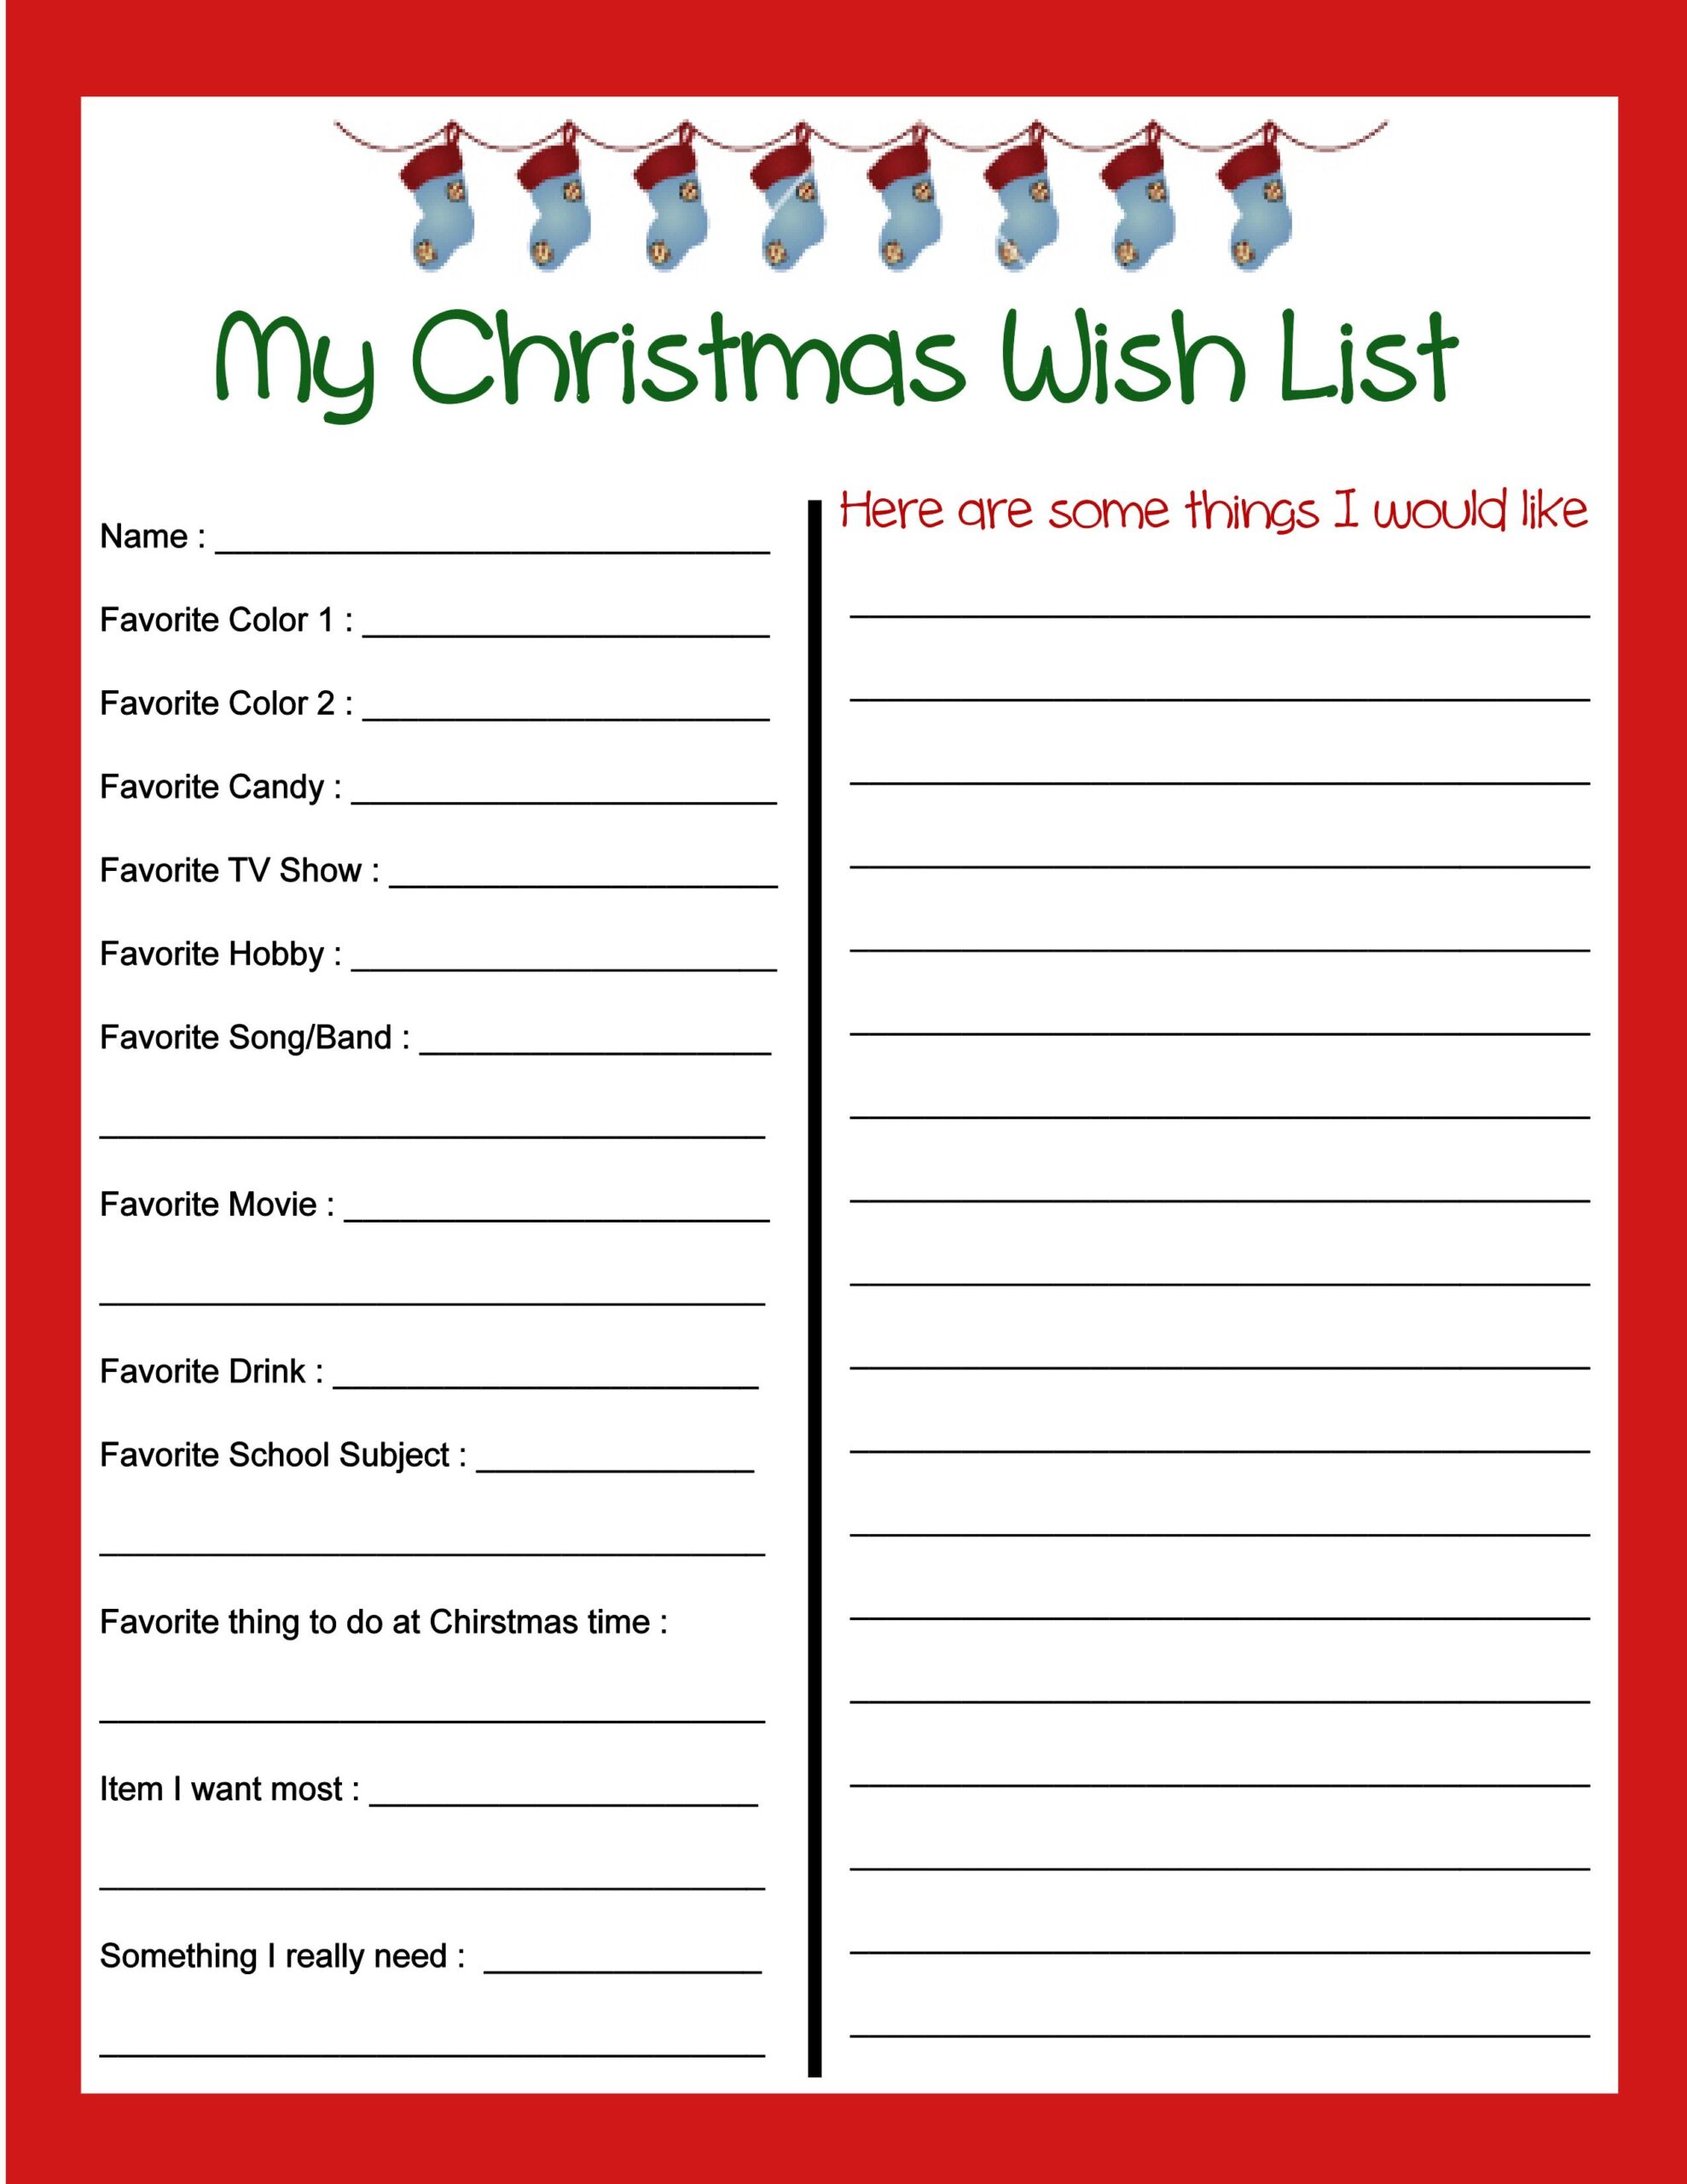 Free Printable Christmas List Template_82163